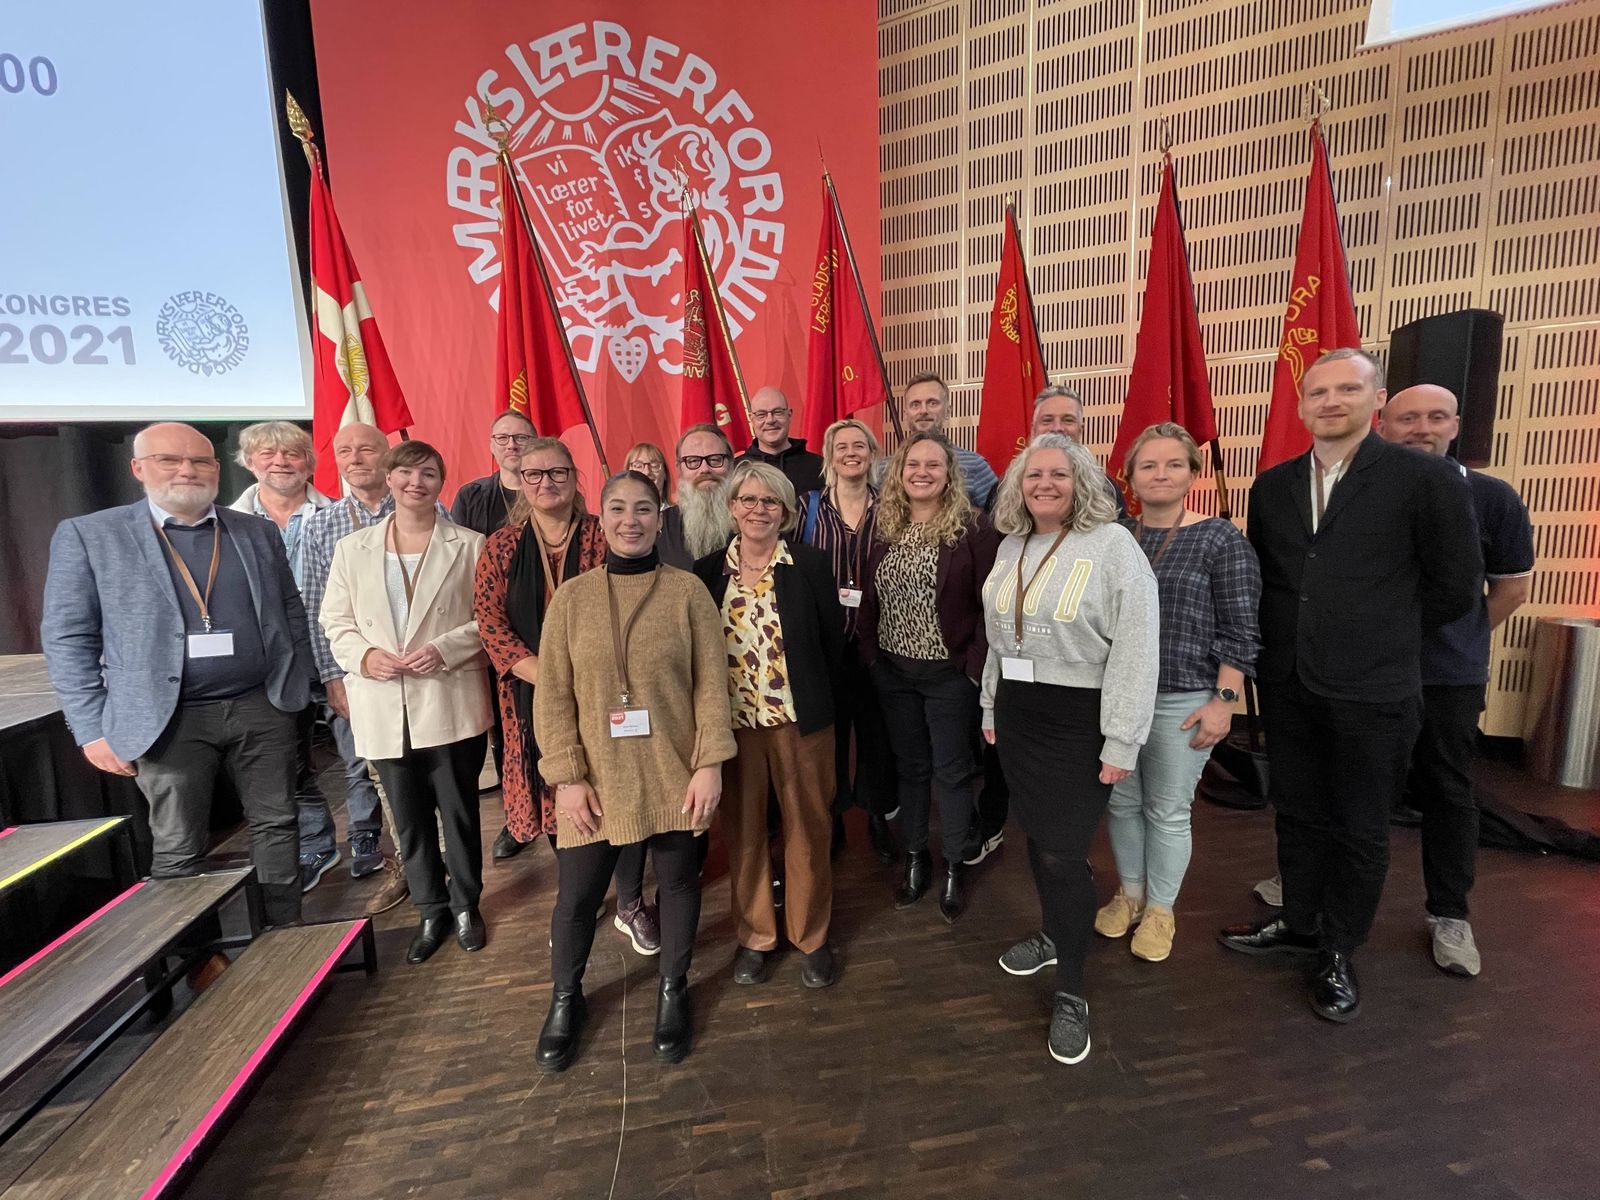 Københavns Lærerforenings kongresdelegerede samlet til gruppefoto. Foto: Jan Klint Poulsen